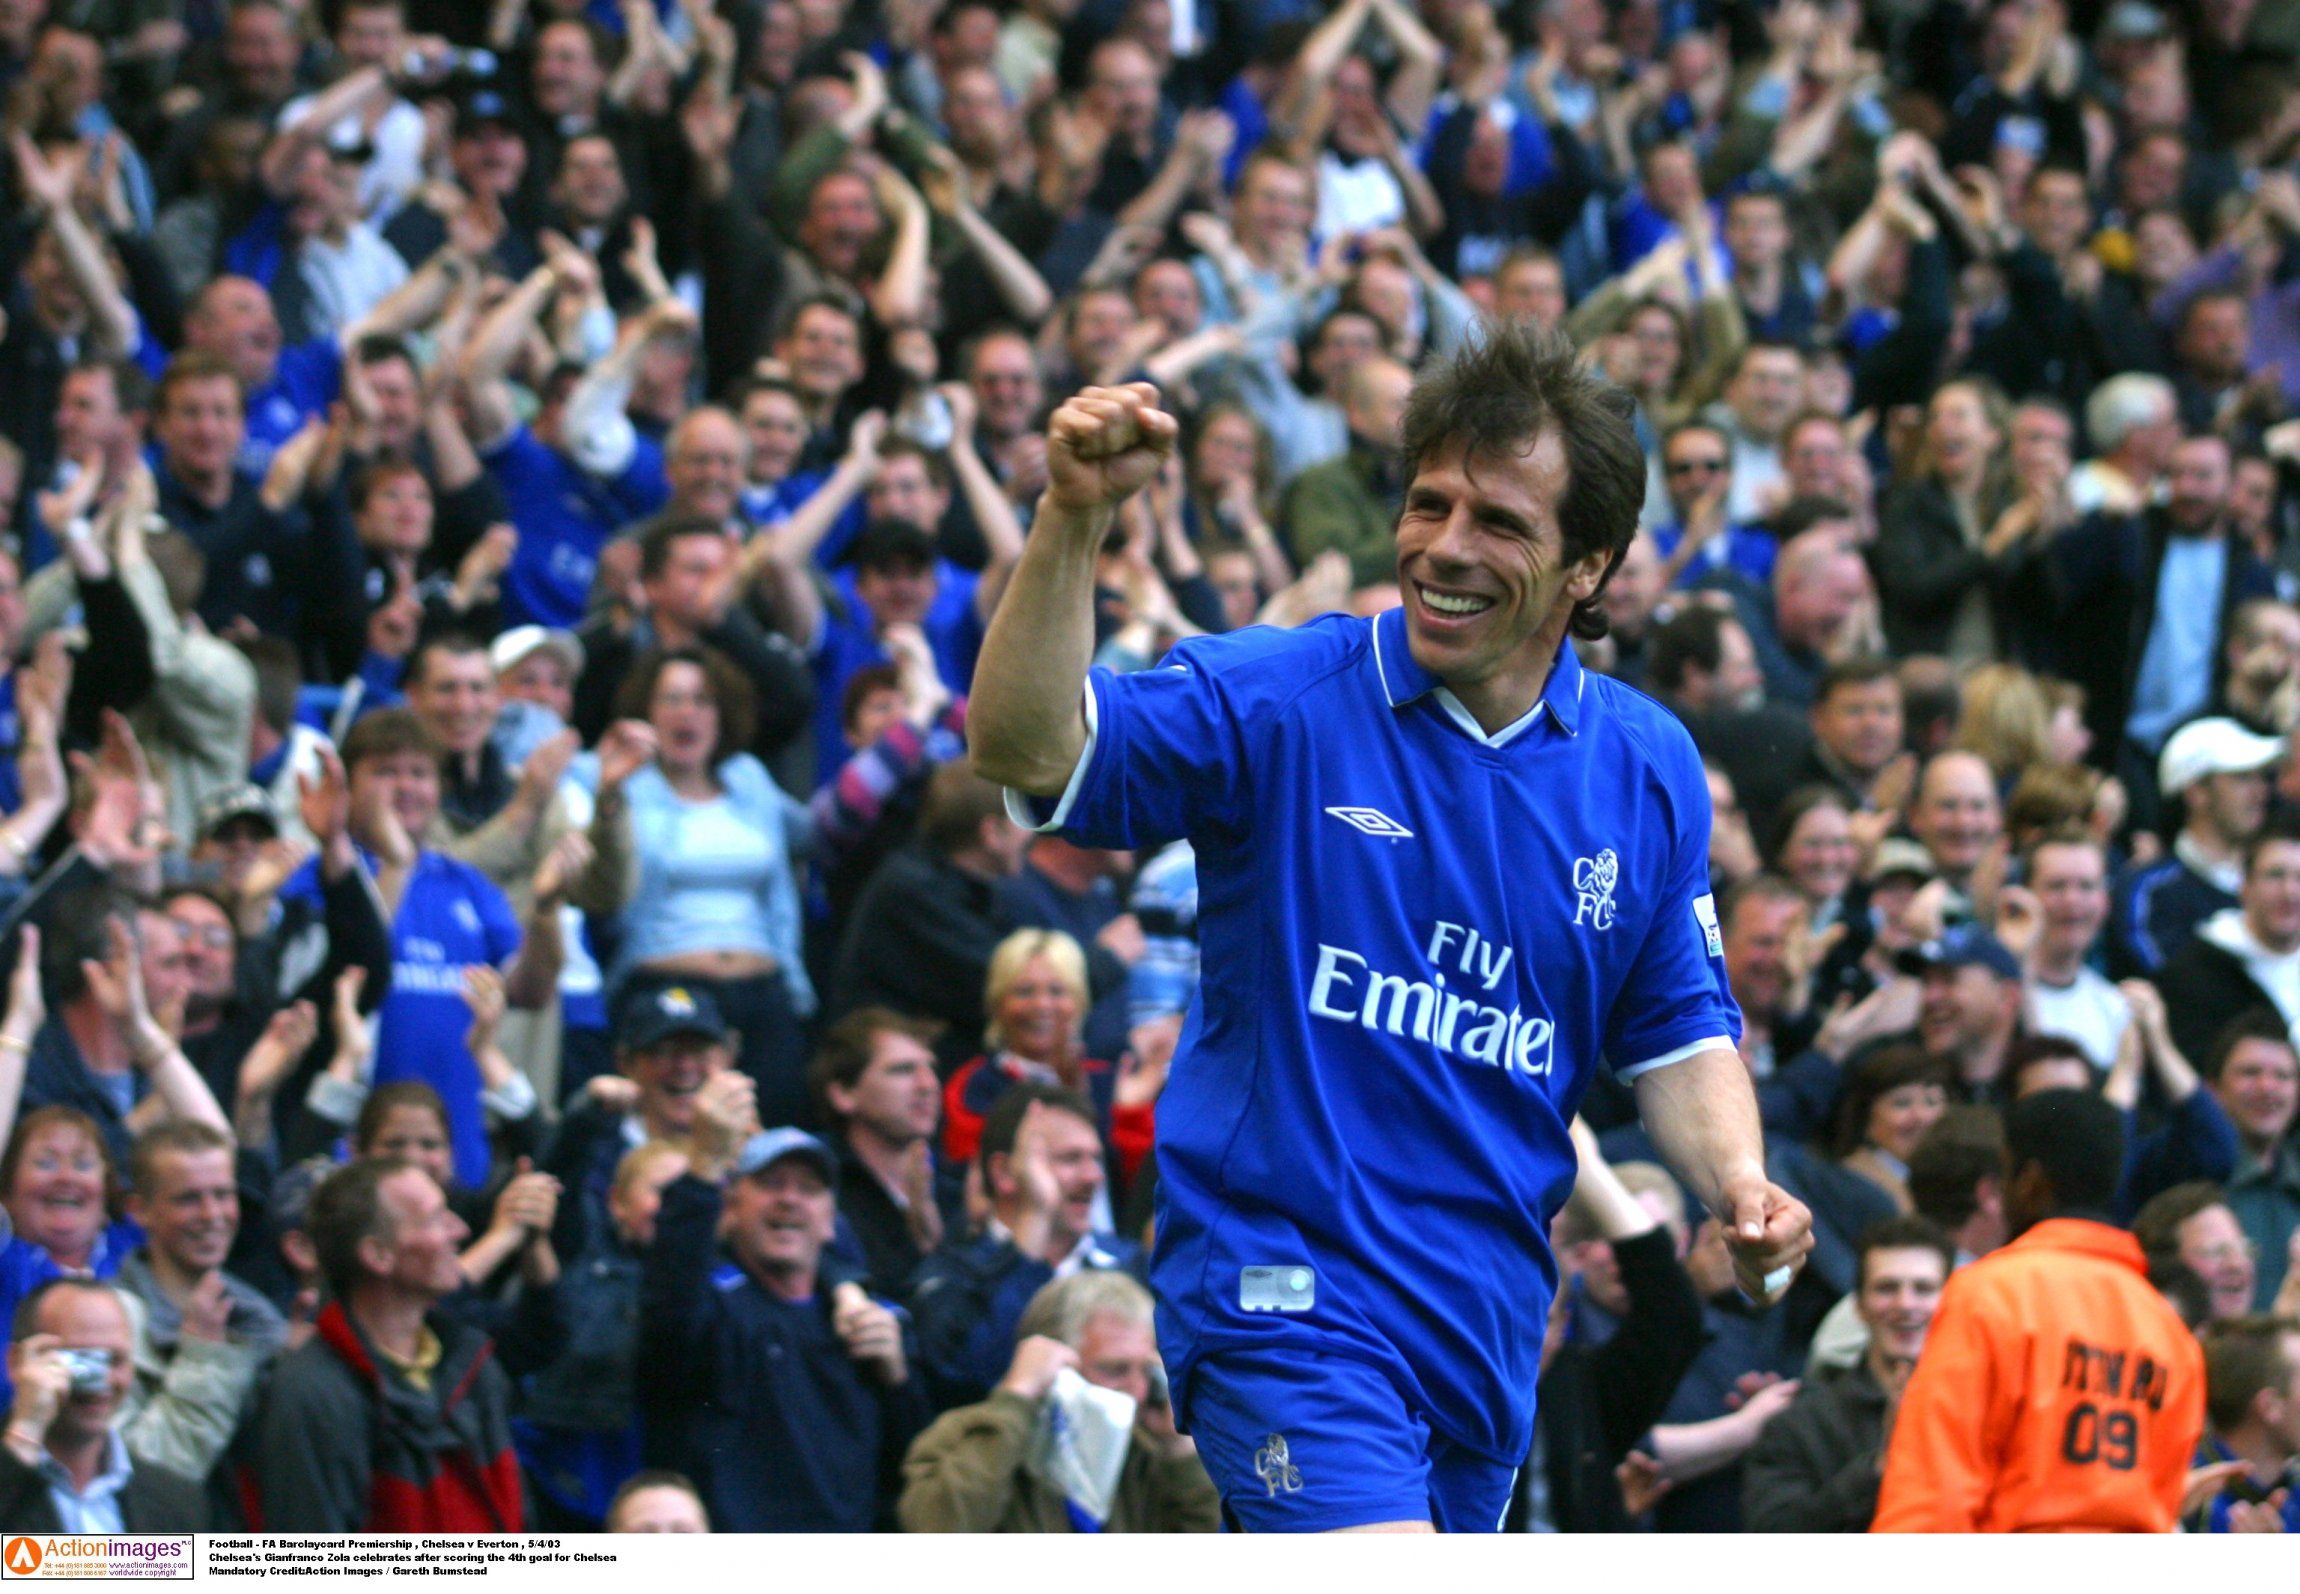 Gianfranco Zola celebrates scoring for Chelsea